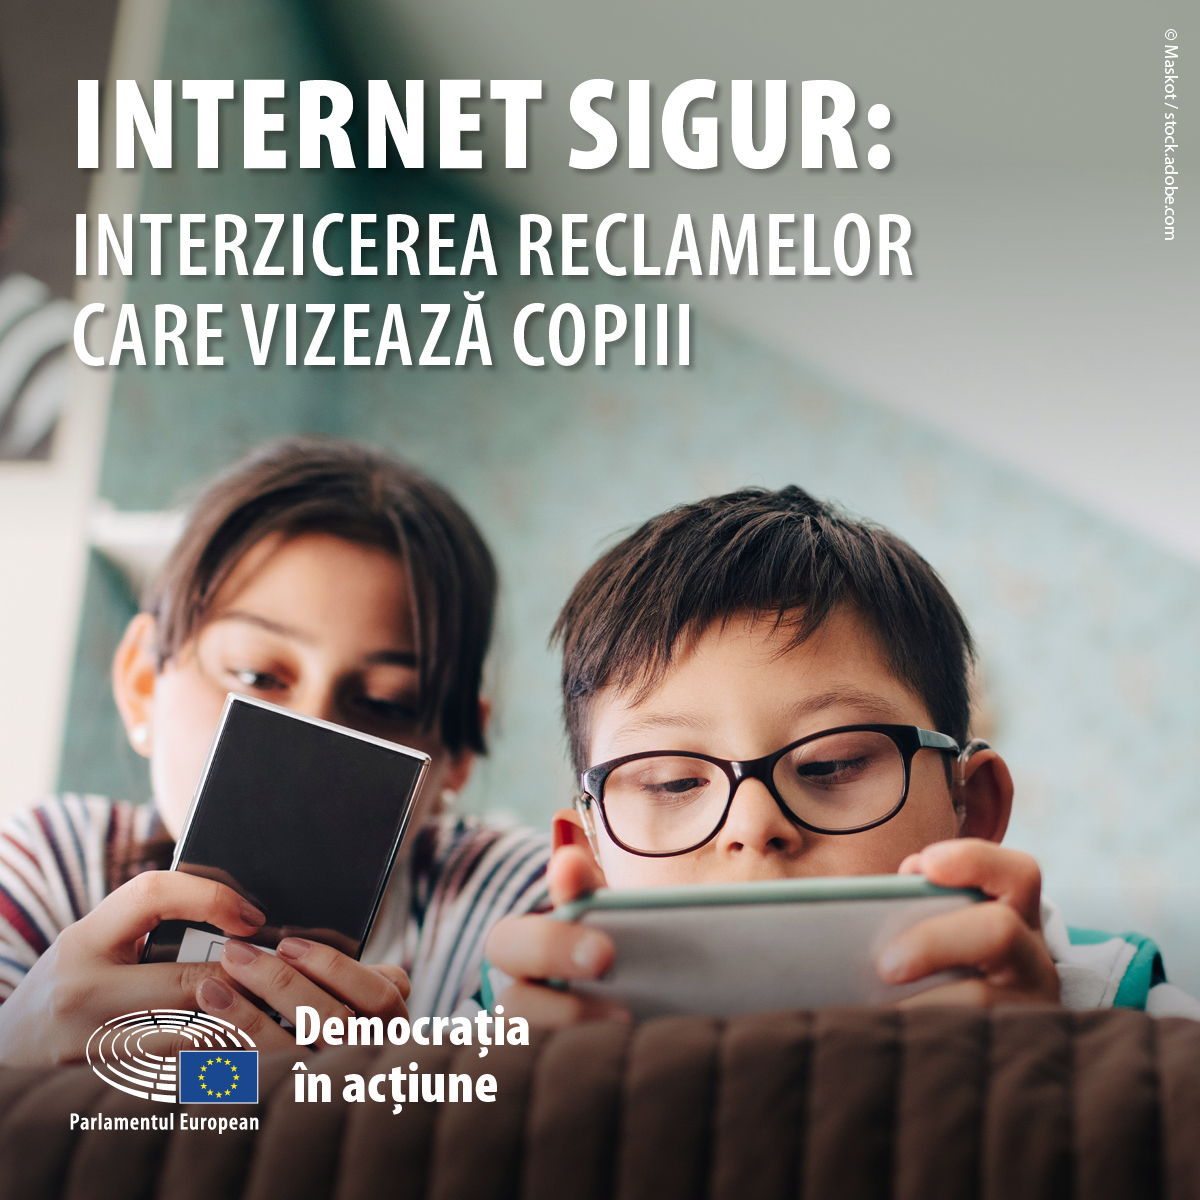 Safe Internet - Square.jpg